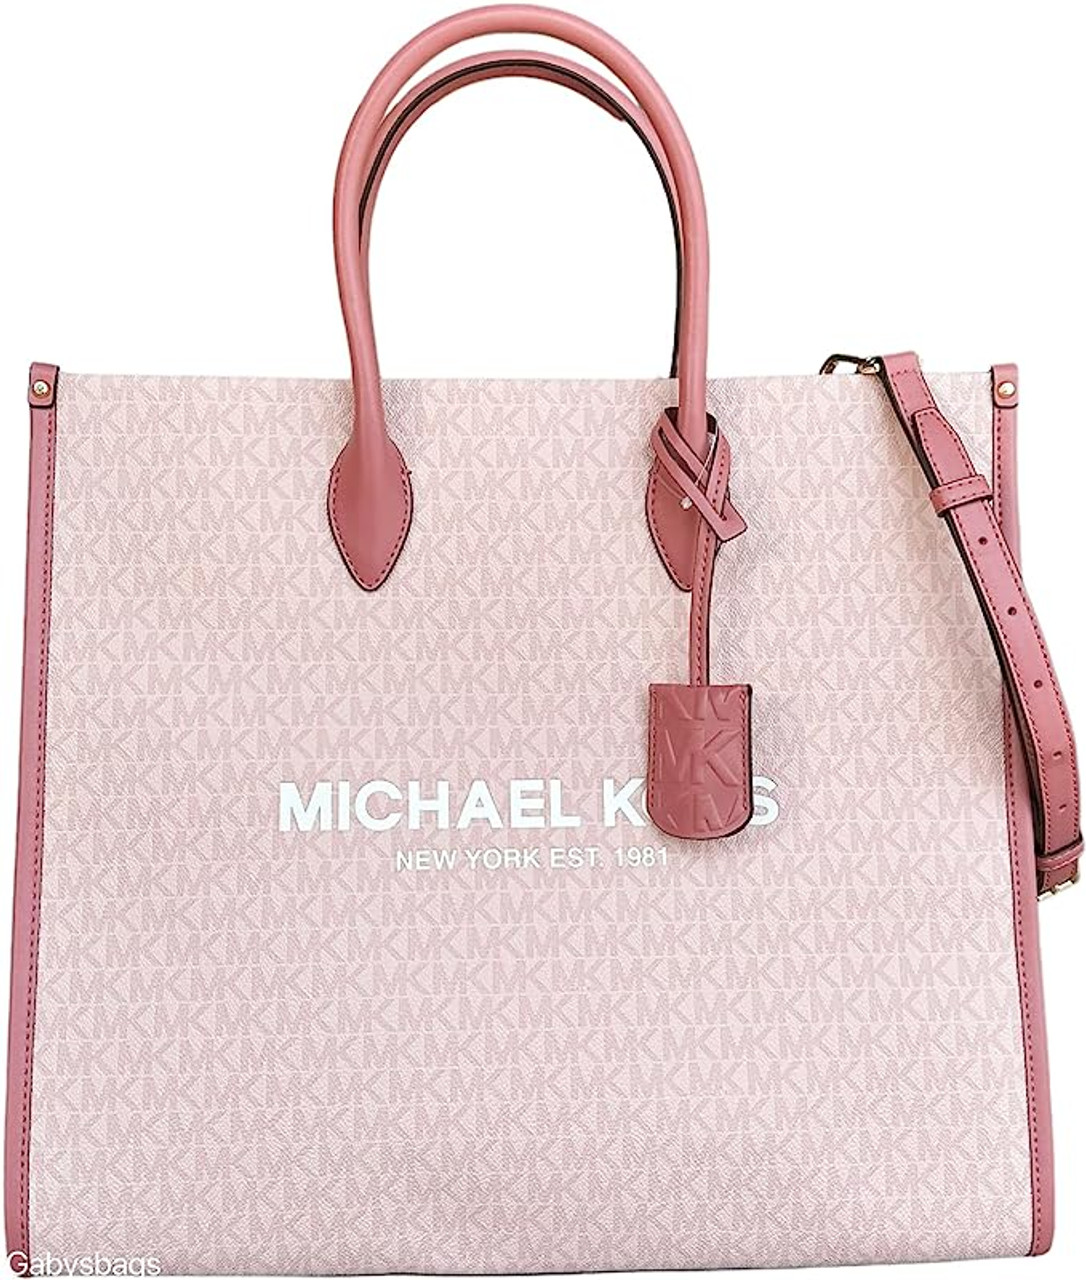 Michael Kors Mirella Large Tote Bag